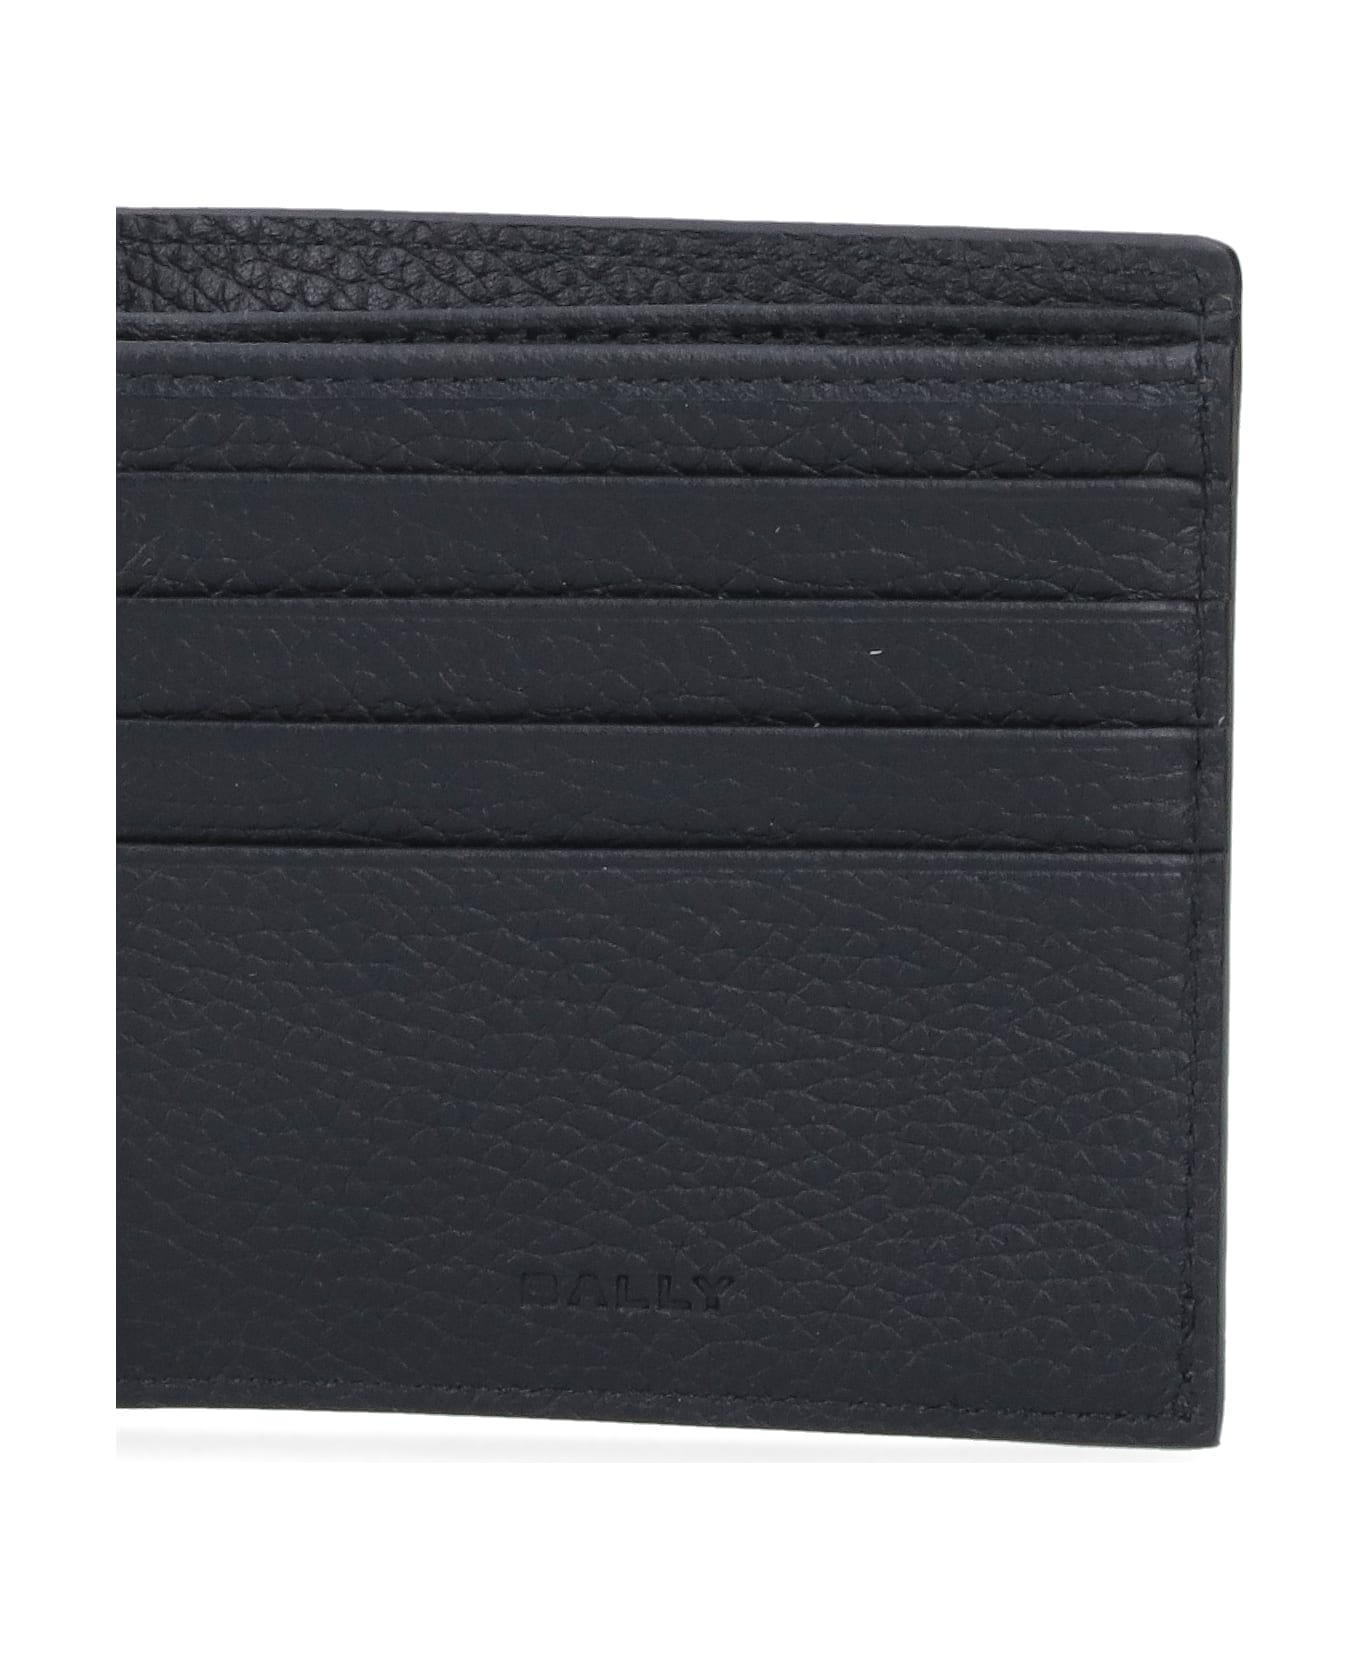 Bally Bi-fold Logo Wallet - Black   財布